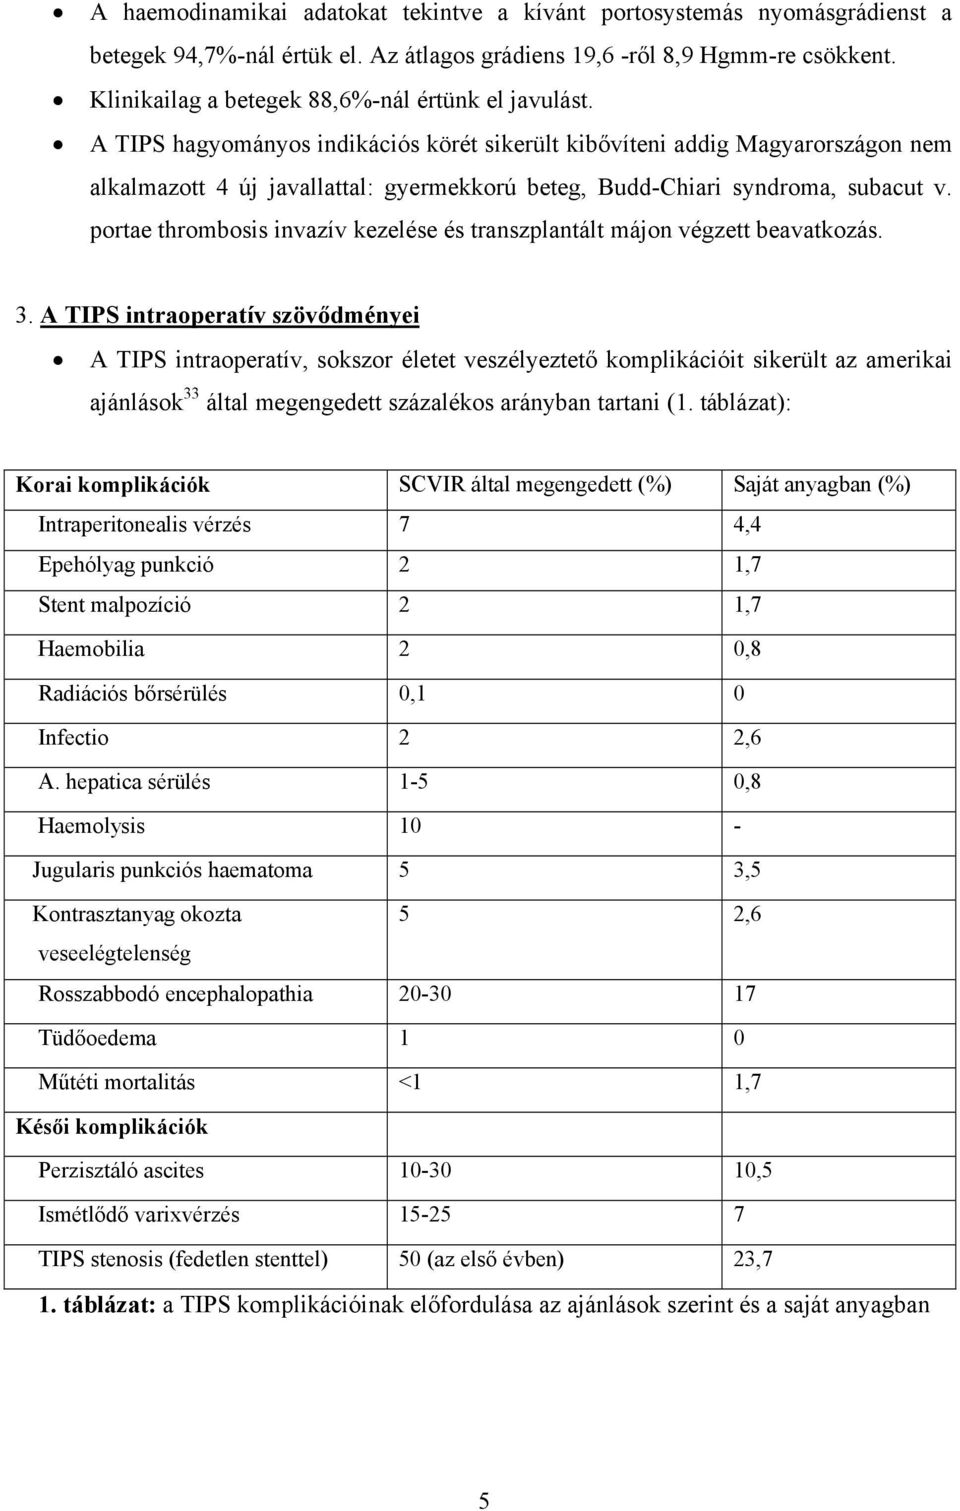 A TIPS hagyományos indikációs körét sikerült kibővíteni addig Magyarországon nem alkalmazott 4 új javallattal: gyermekkorú beteg, Budd-Chiari syndroma, subacut v.